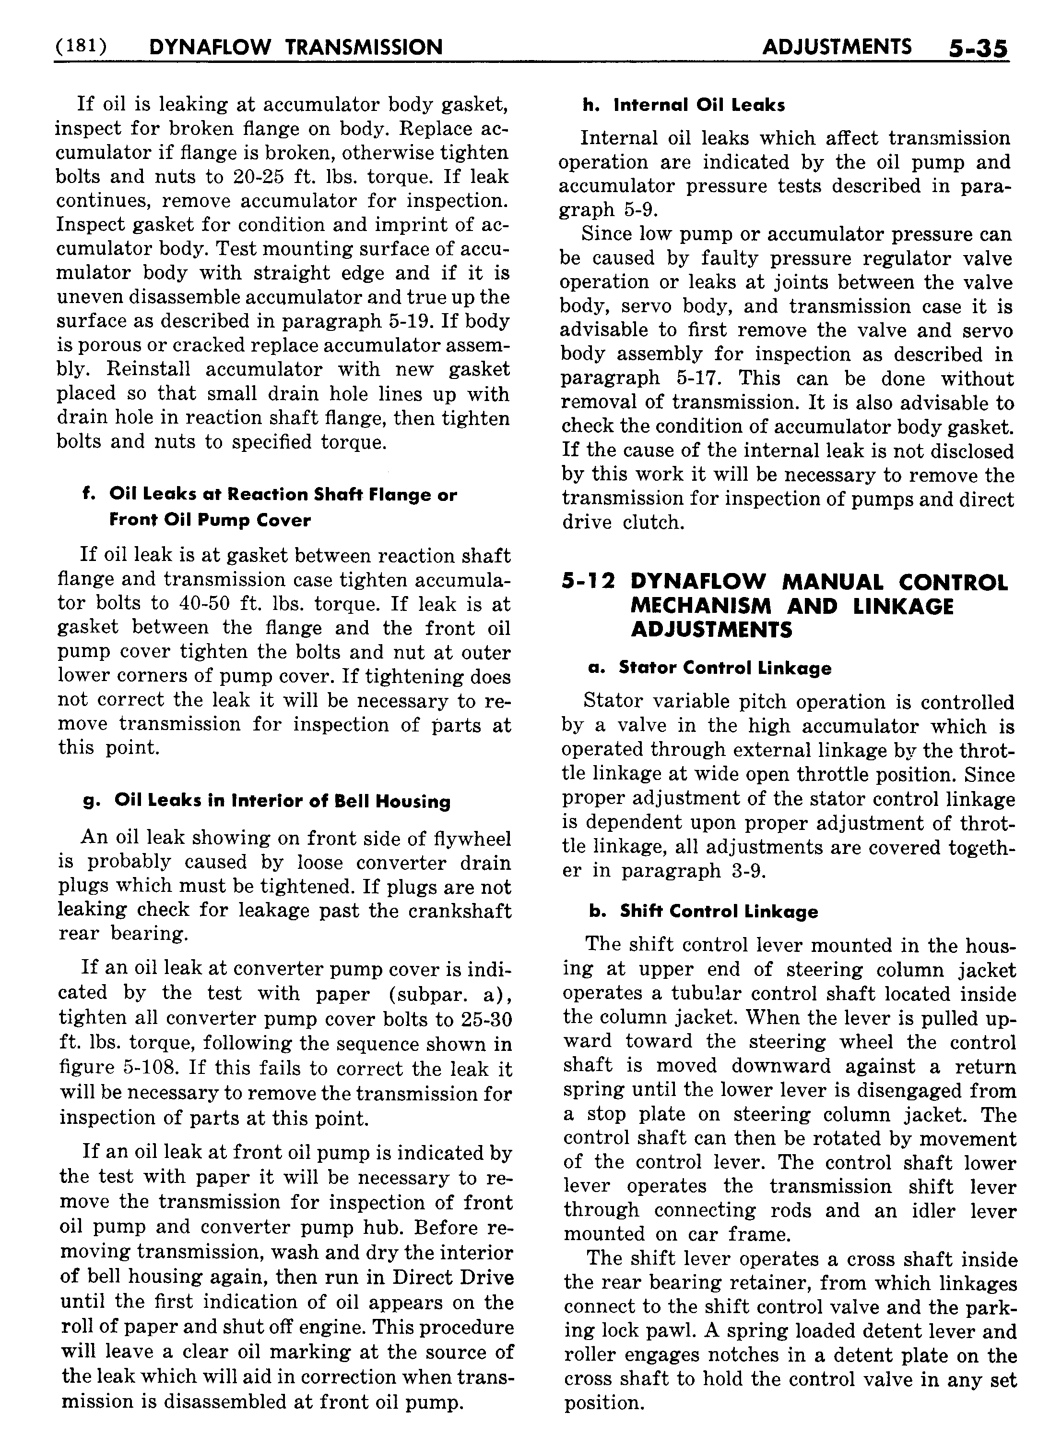 n_06 1956 Buick Shop Manual - Dynaflow-035-035.jpg